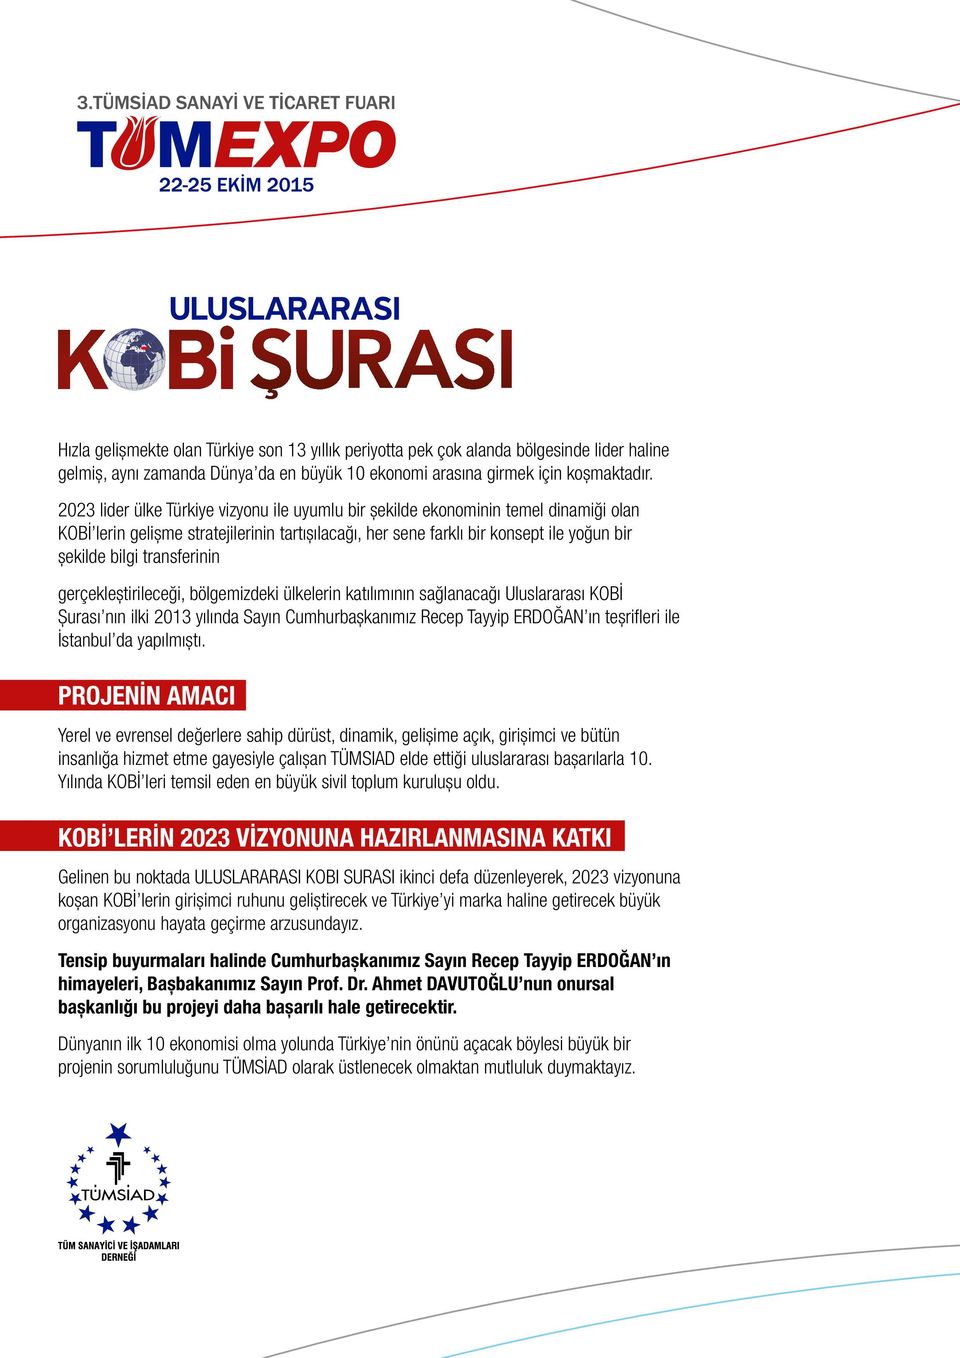 transferinin gerçekleştirileceği, bölgemizdeki ülkelerin katılımının sağlanacağı Uluslararası KOBİ Şurası nın ilki 2013 yılında Sayın Cumhurbaşkanımız Recep Tayyip ERDOĞAN ın teşrifleri ile İstanbul